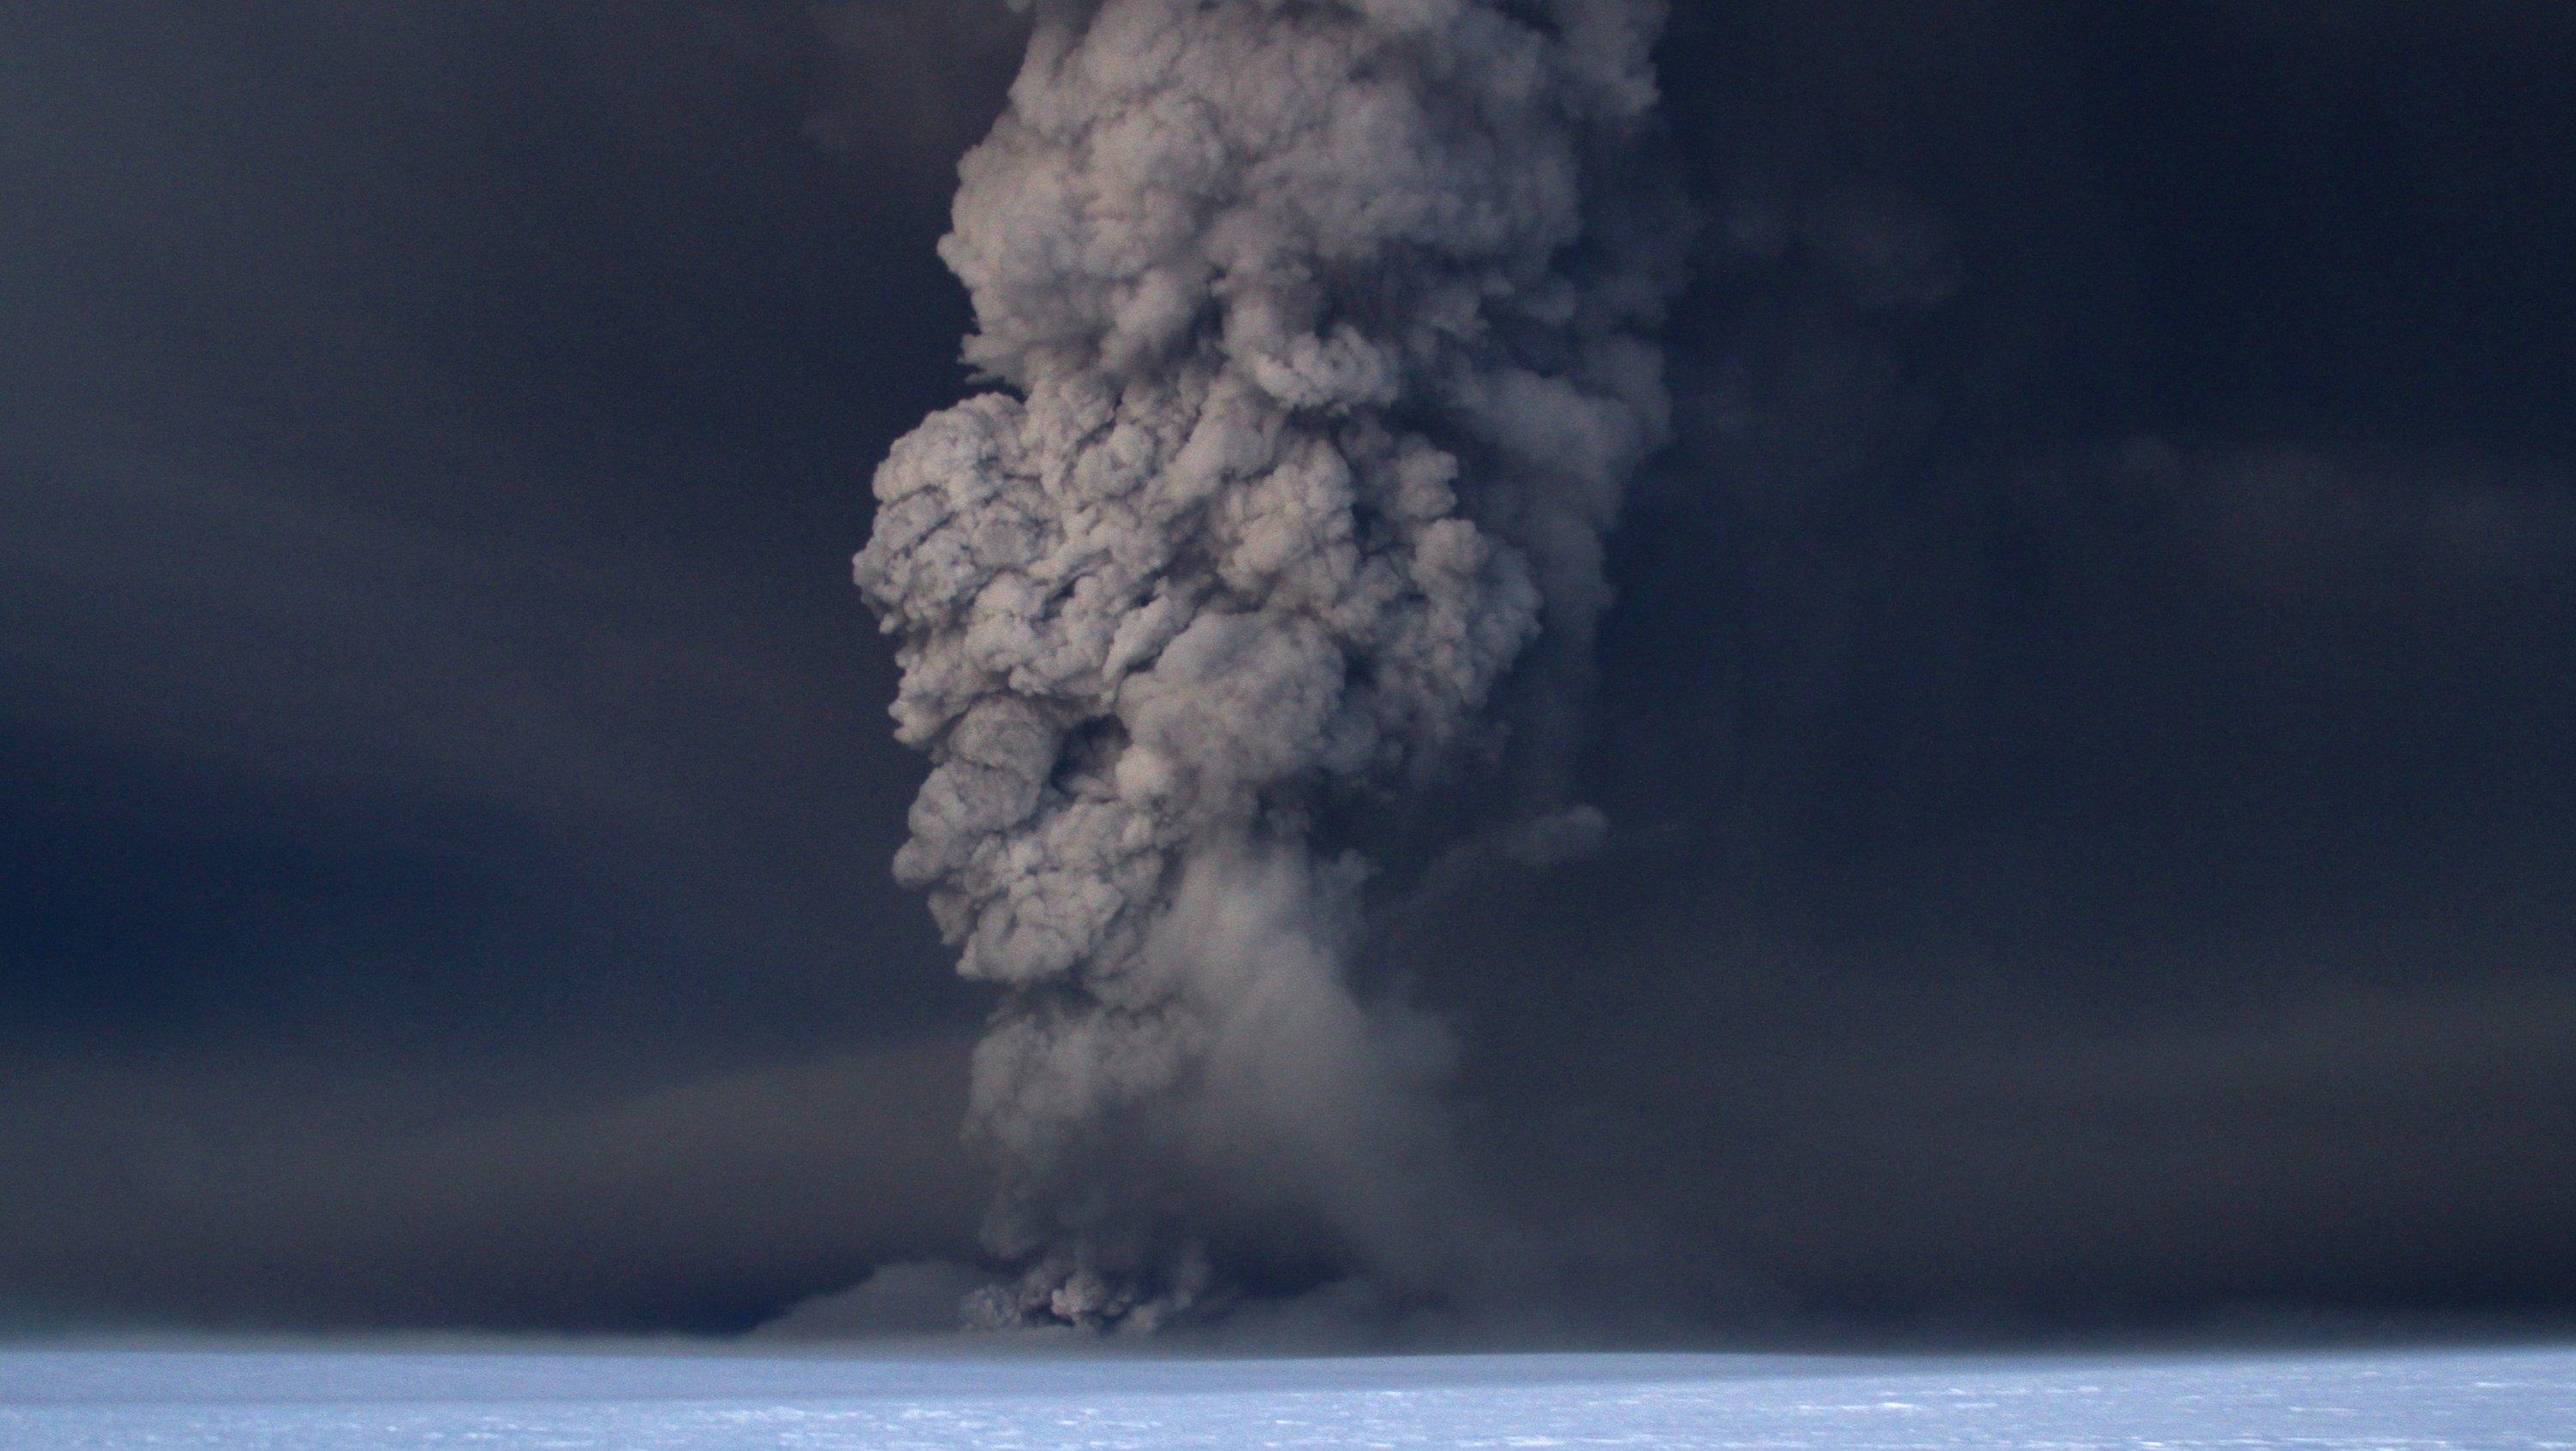 Der Vulkan Grimsvötn in Island spuckt Asche in den Himmel, in der Nacht vom 21.05.2011.  Die Aschewolke aus Island hat Deutschland erreicht und die Reisepläne von Zehntausenden Passagieren durchkreuzt. Hunderte Flüge wurden am Mittwoch (25.05.2011) g